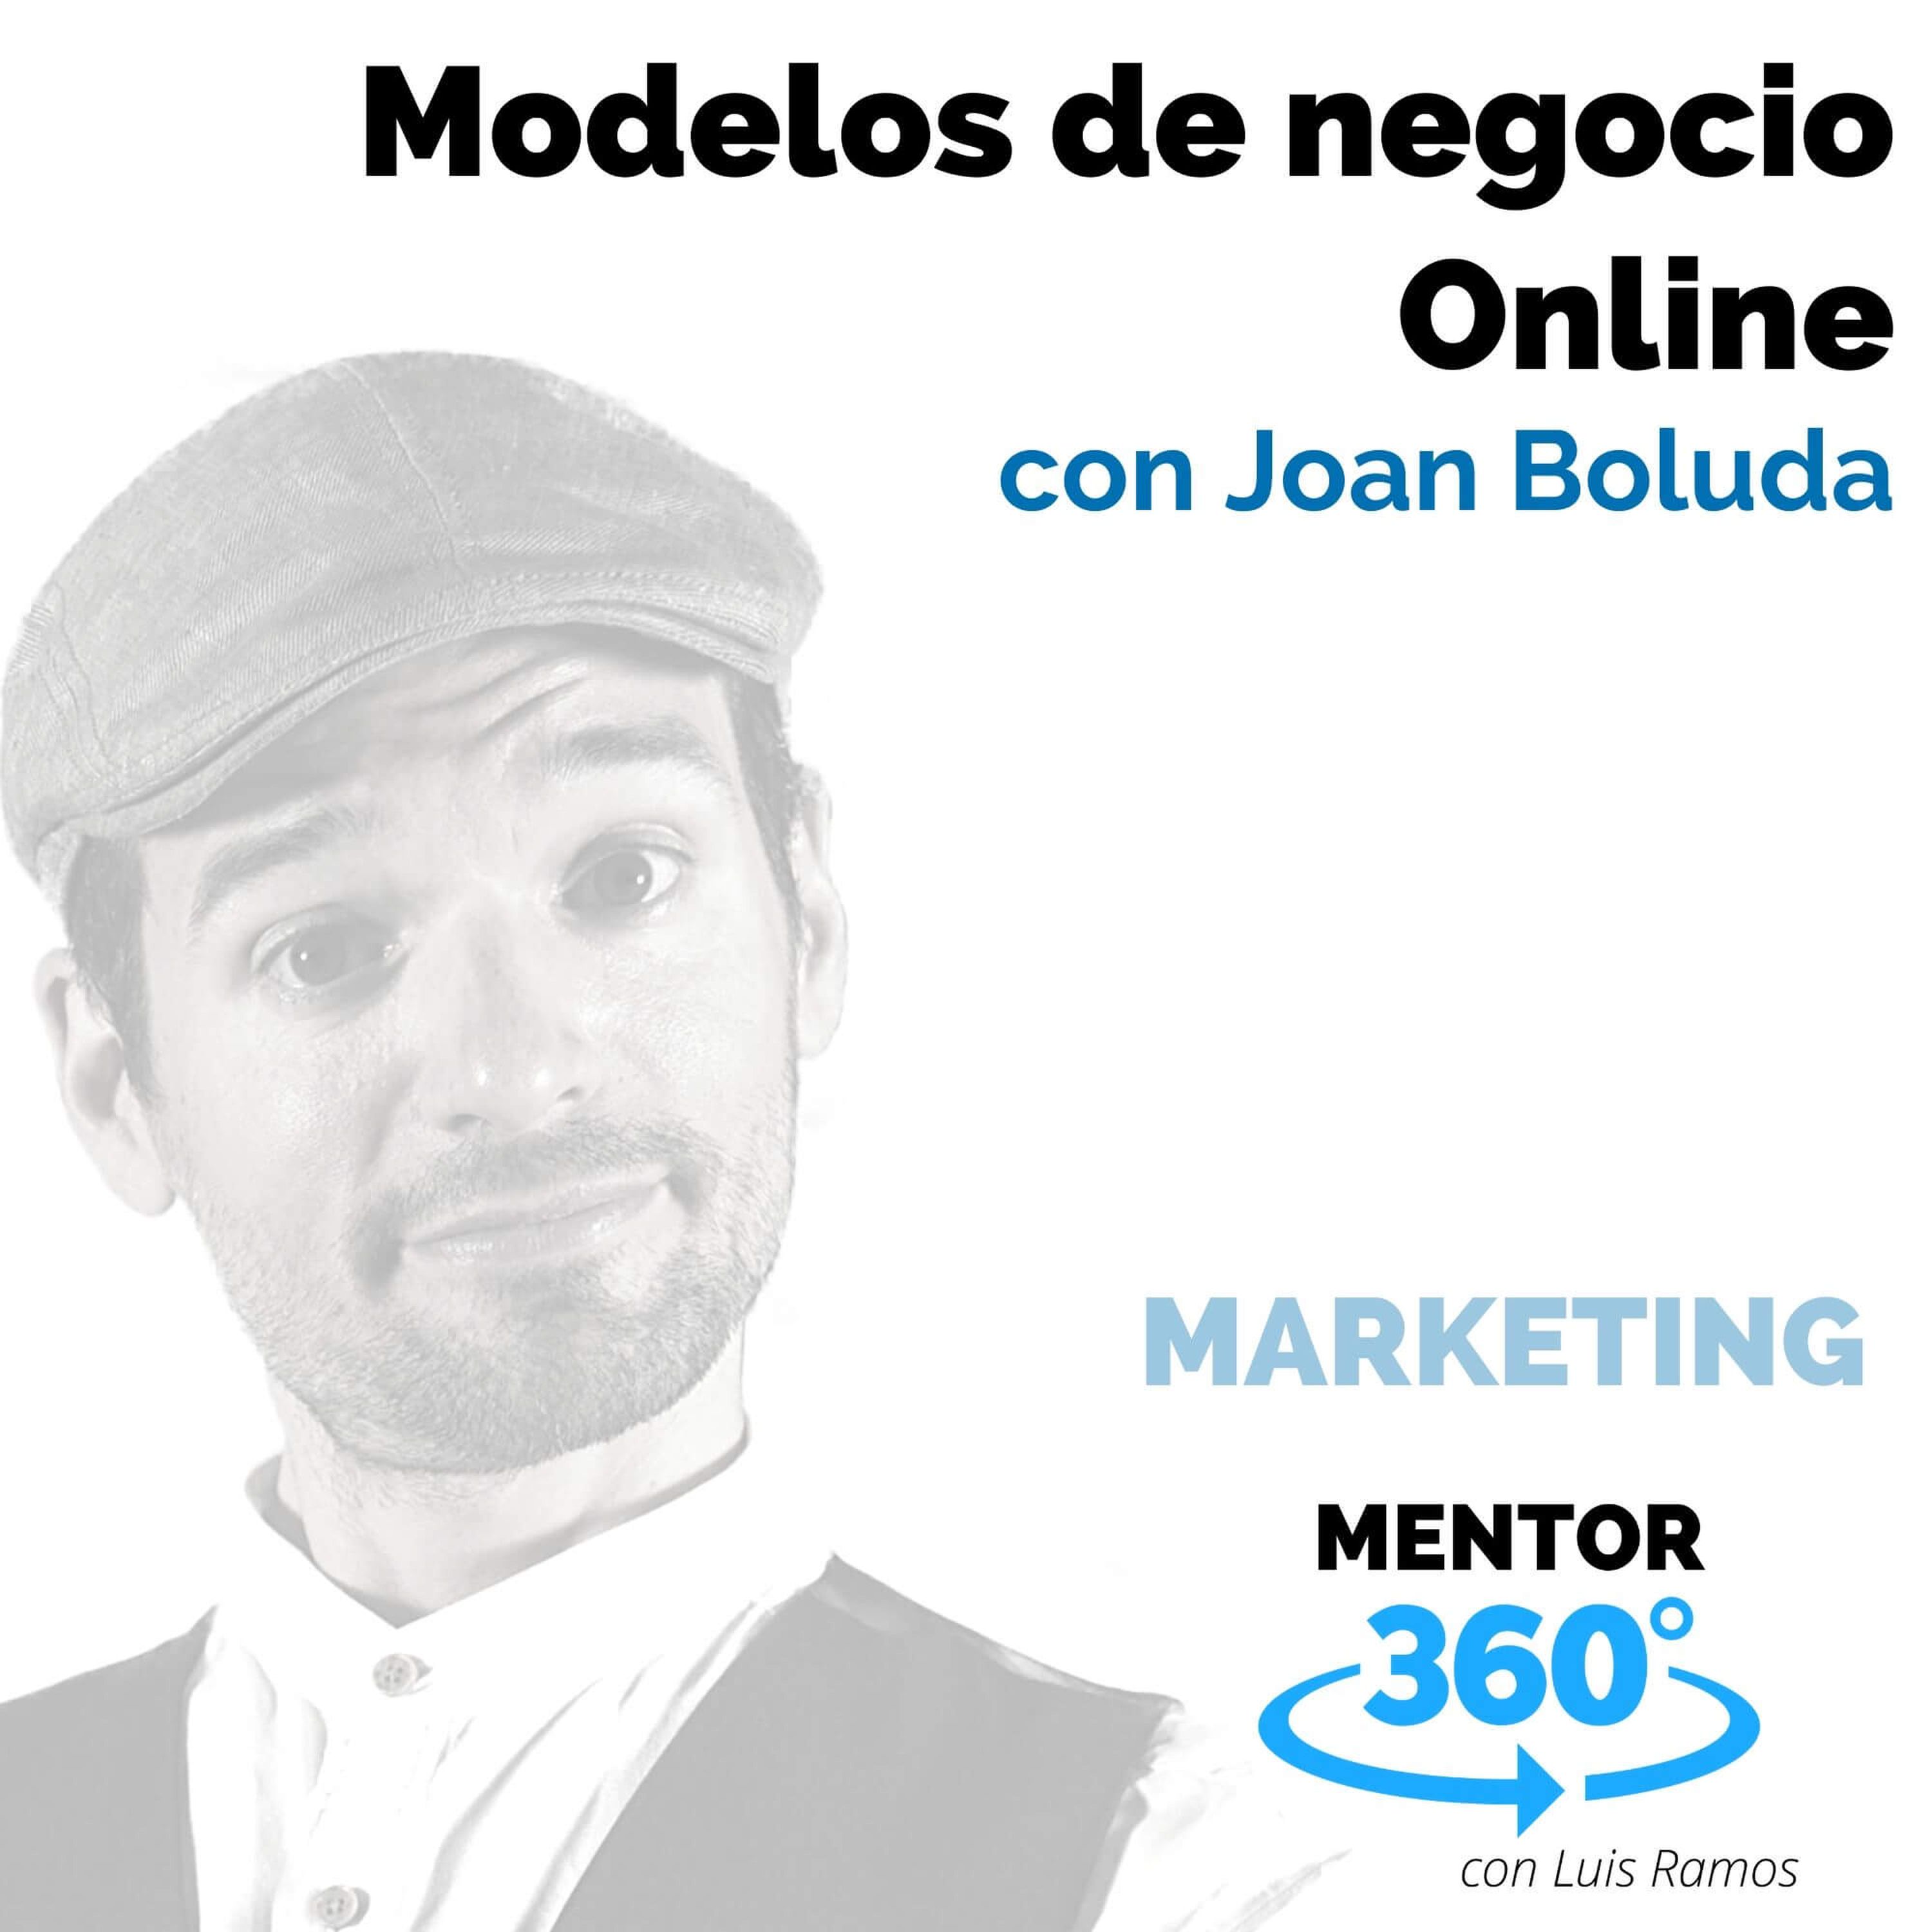 Modelos de negocio Online, con Joan Boluda - MARKETING